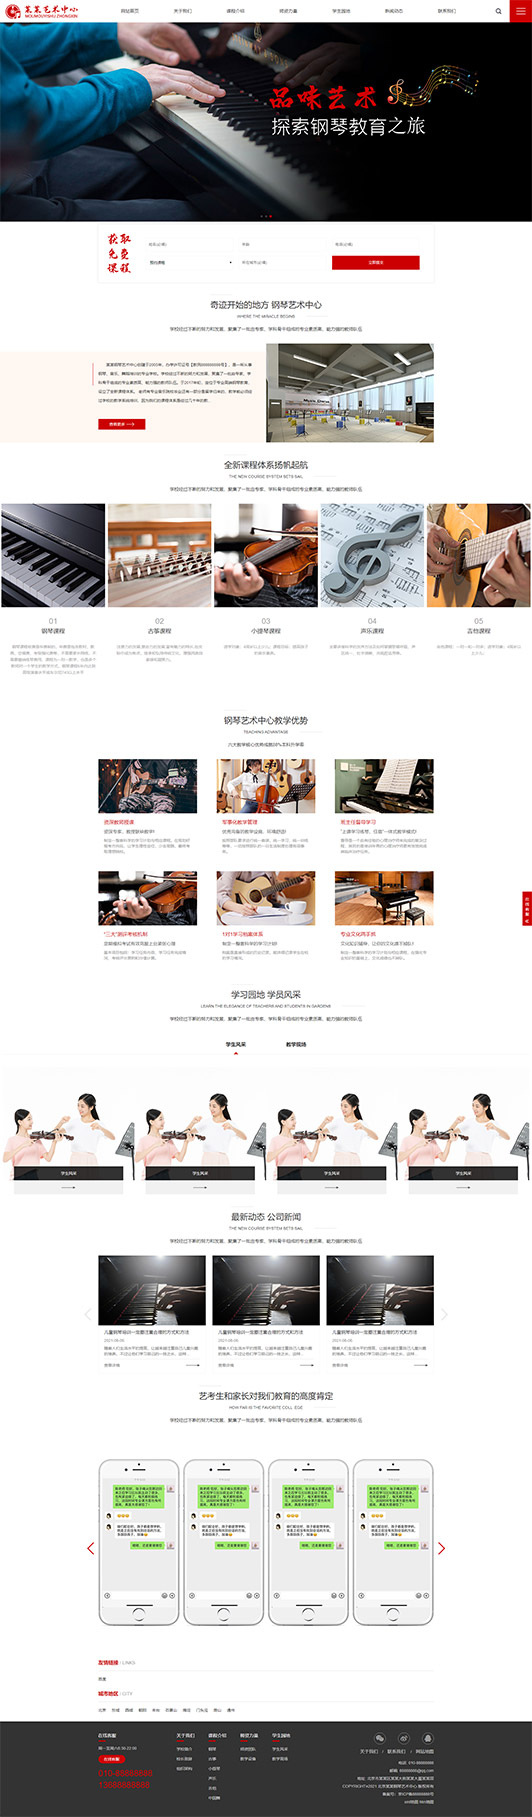 枣庄钢琴艺术培训公司响应式企业网站